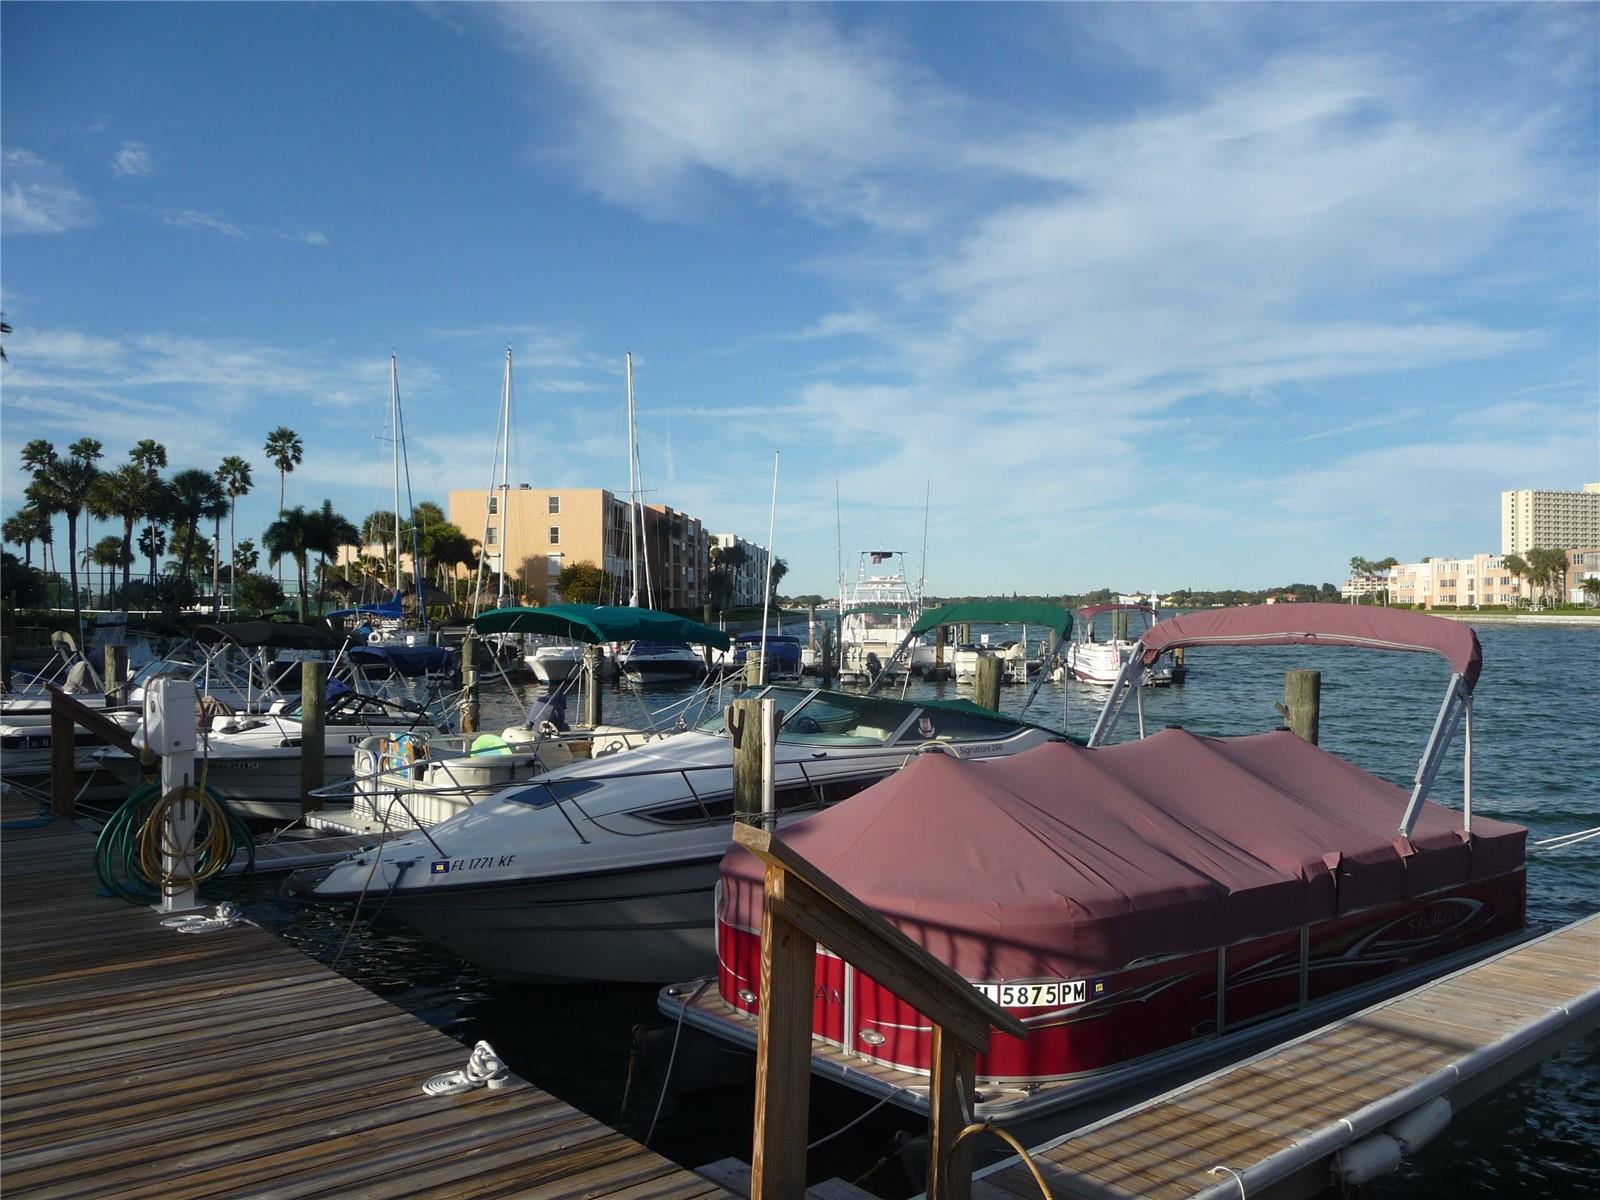 Marina & boat docks.